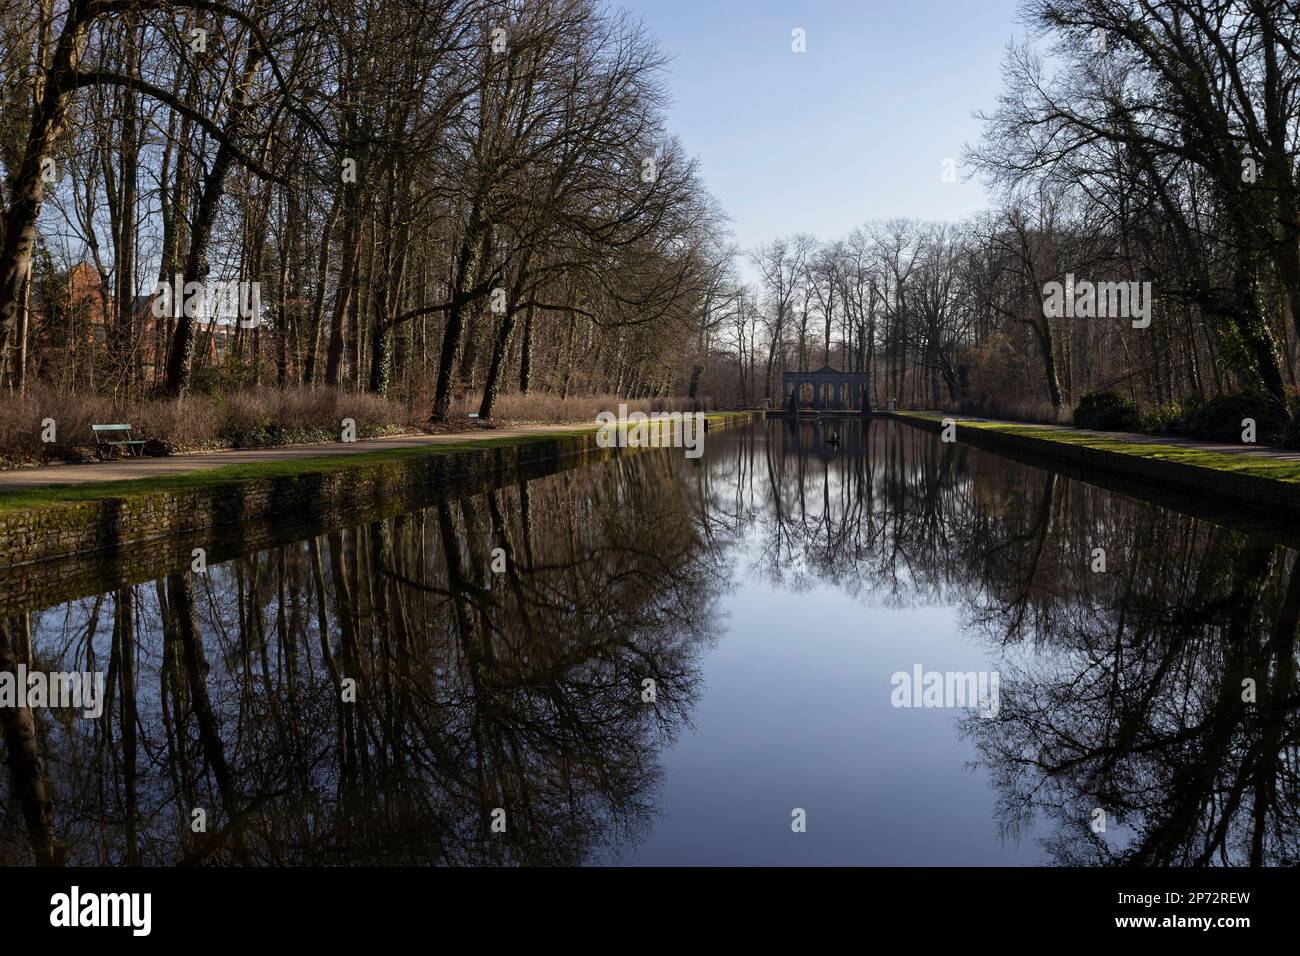 Blick auf den Reflexionspool im „Het Stad's“ Park in Aalst, Ostflandern, Belgien. Wunderschöne Reflexionen der umliegenden Bäume im stillen Wasser Stockfoto